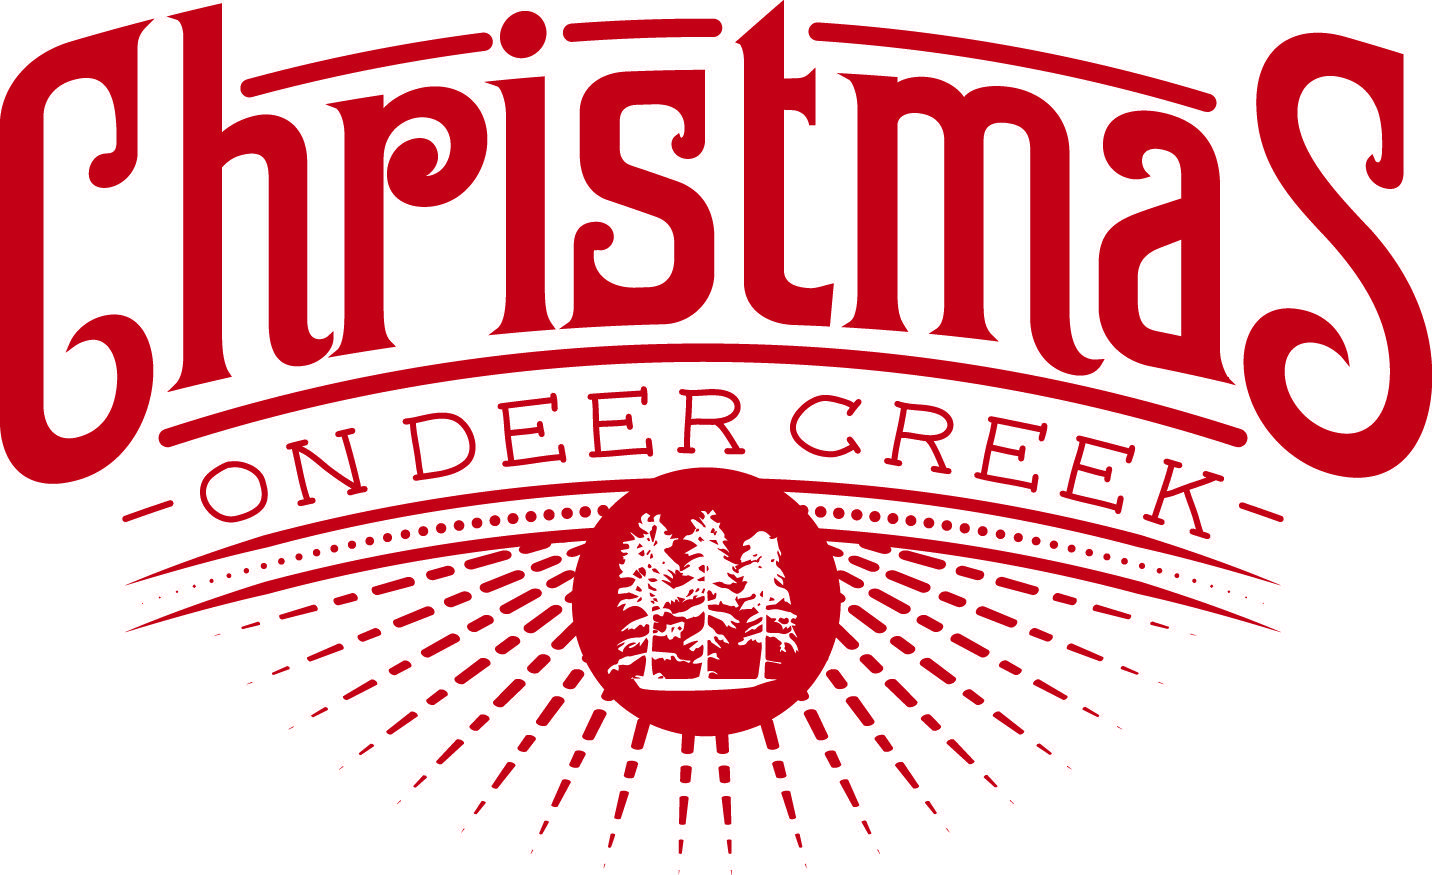 Google.com Christmas Logo - Christmas on Deer Creek